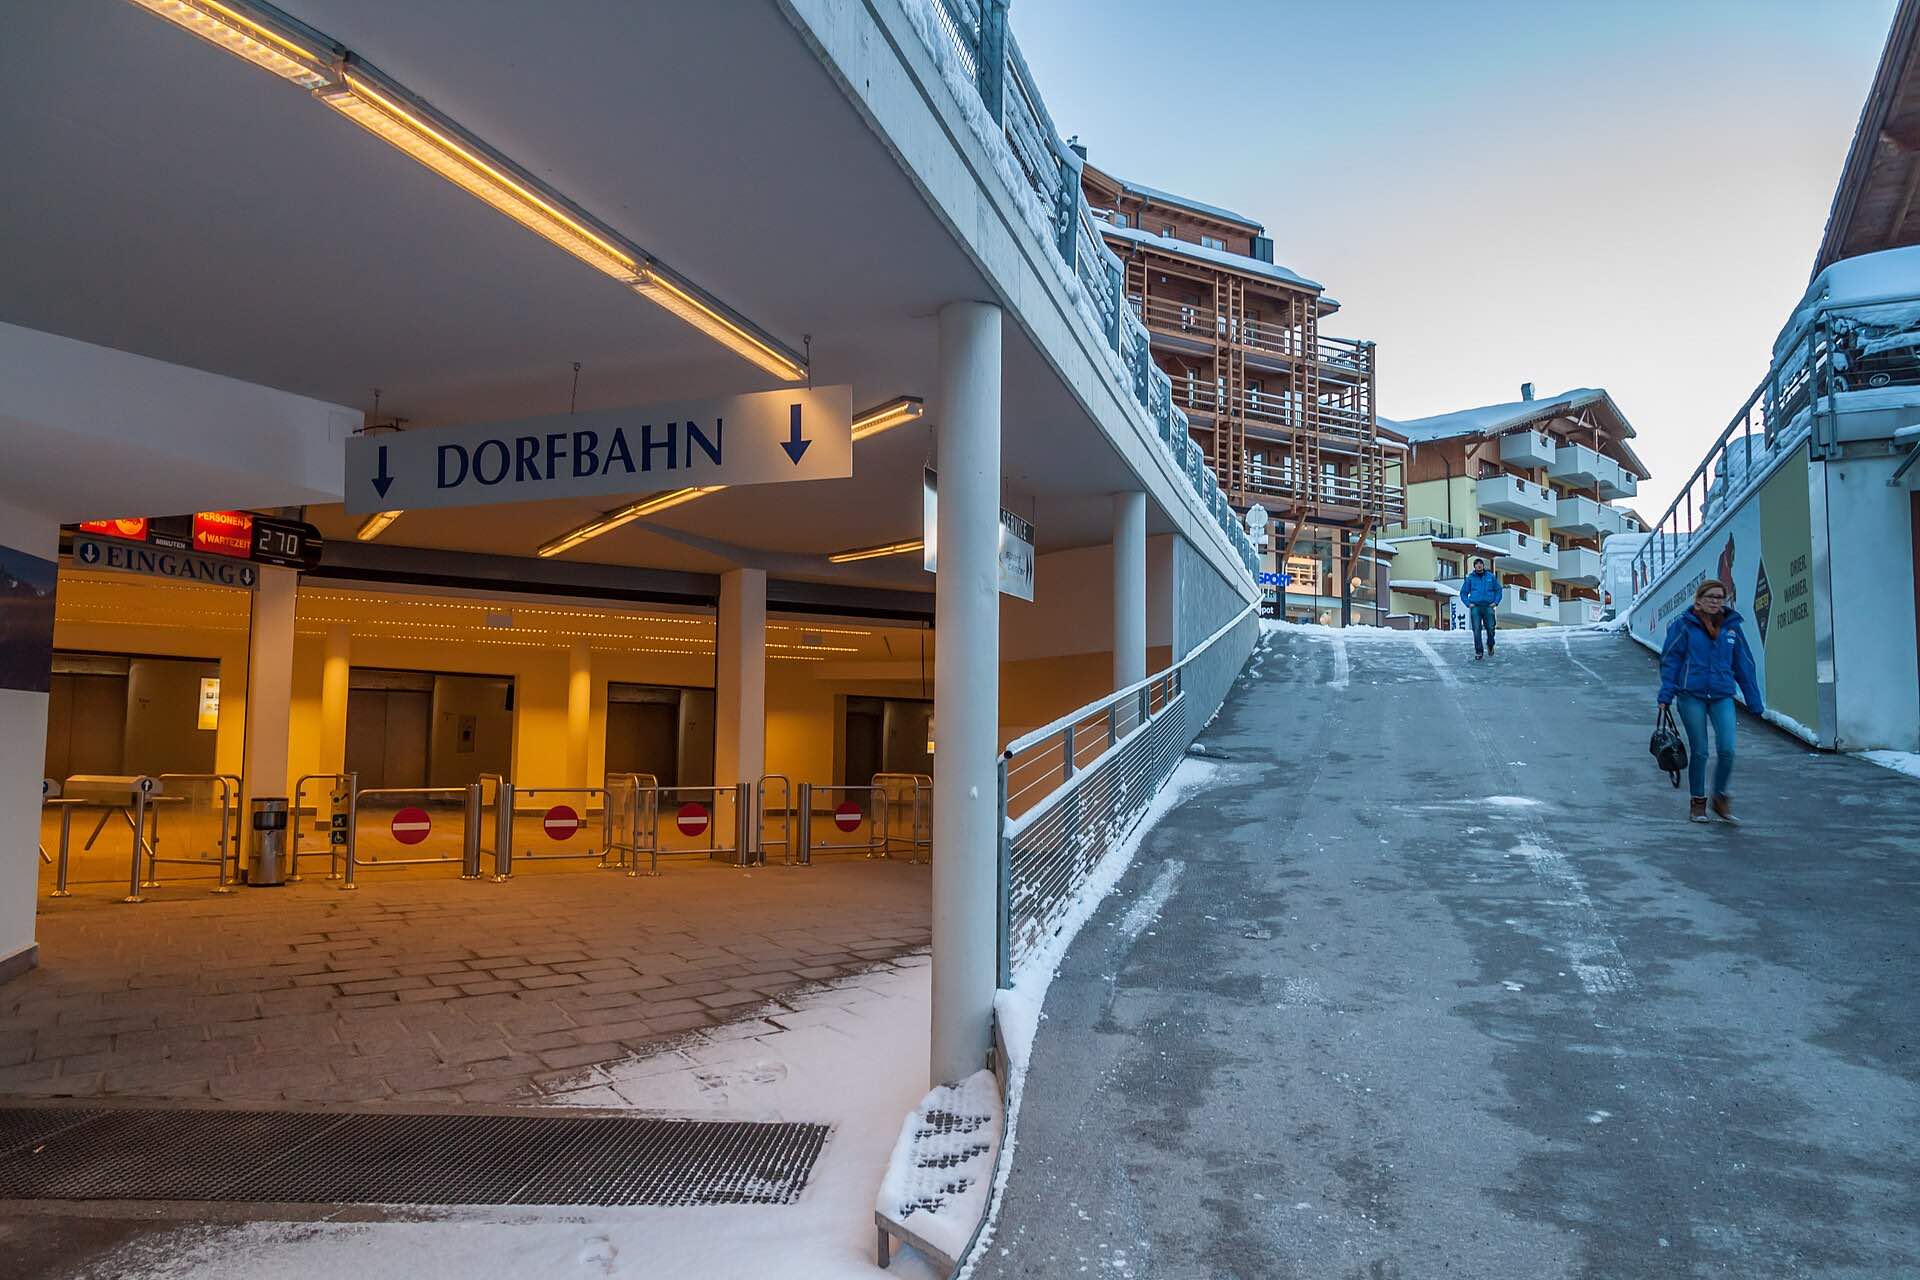 El metro más corto y más alto del mundo pasa por debajo de una estación de esquí austriaca